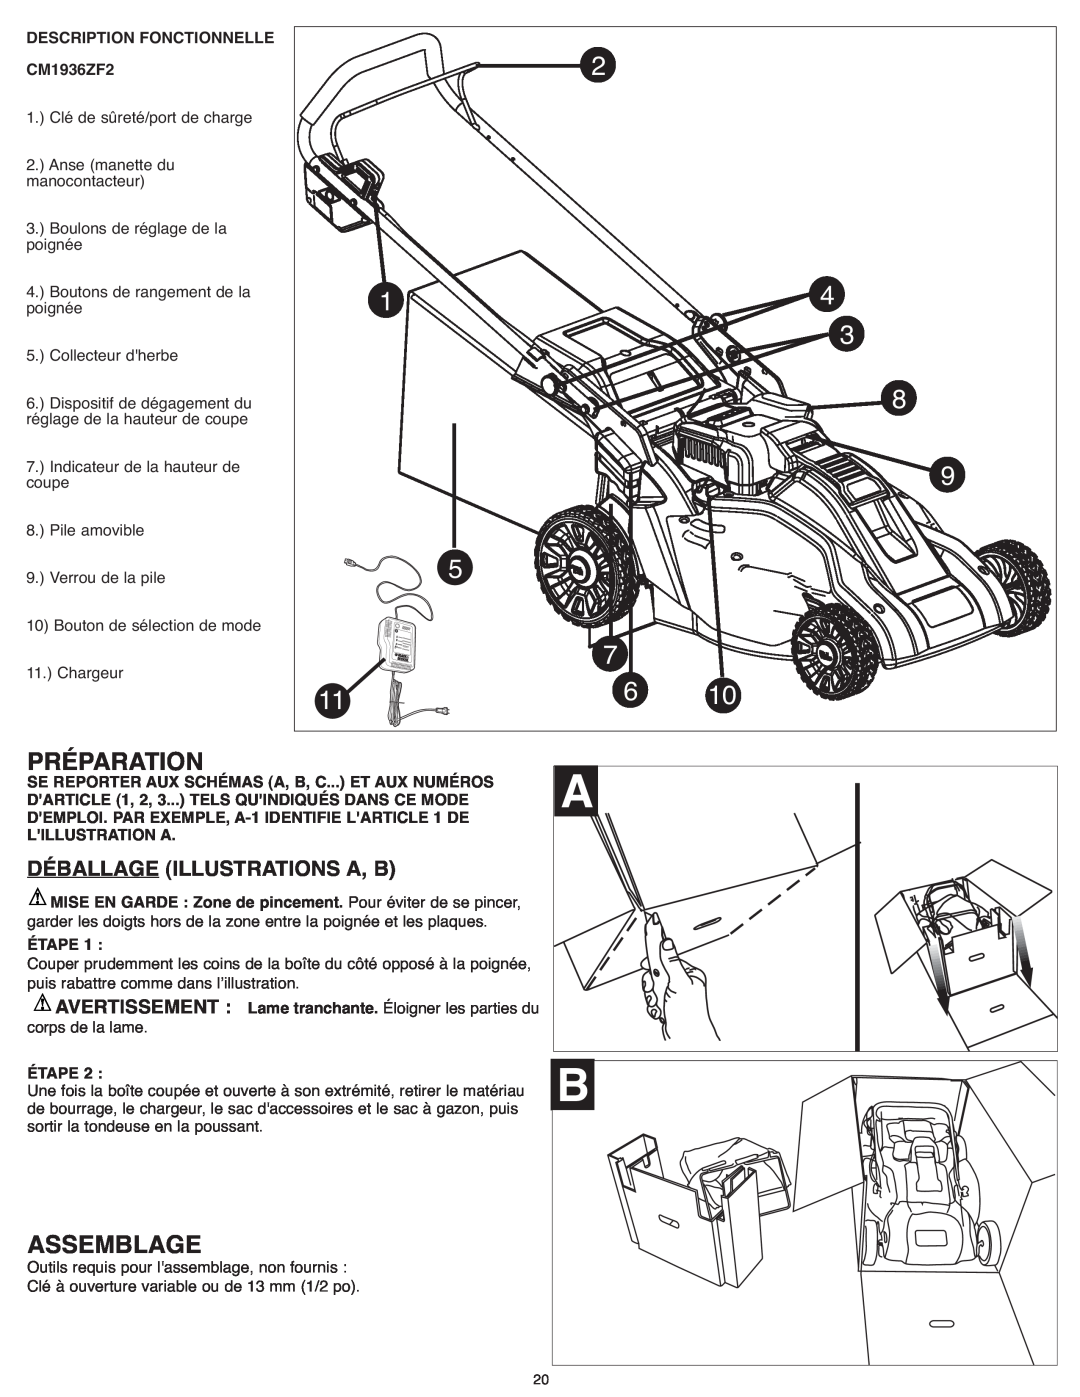 Black & Decker CM1936ZF2 instruction manual Préparation, Assemblage, Déballageillustrations A, B 